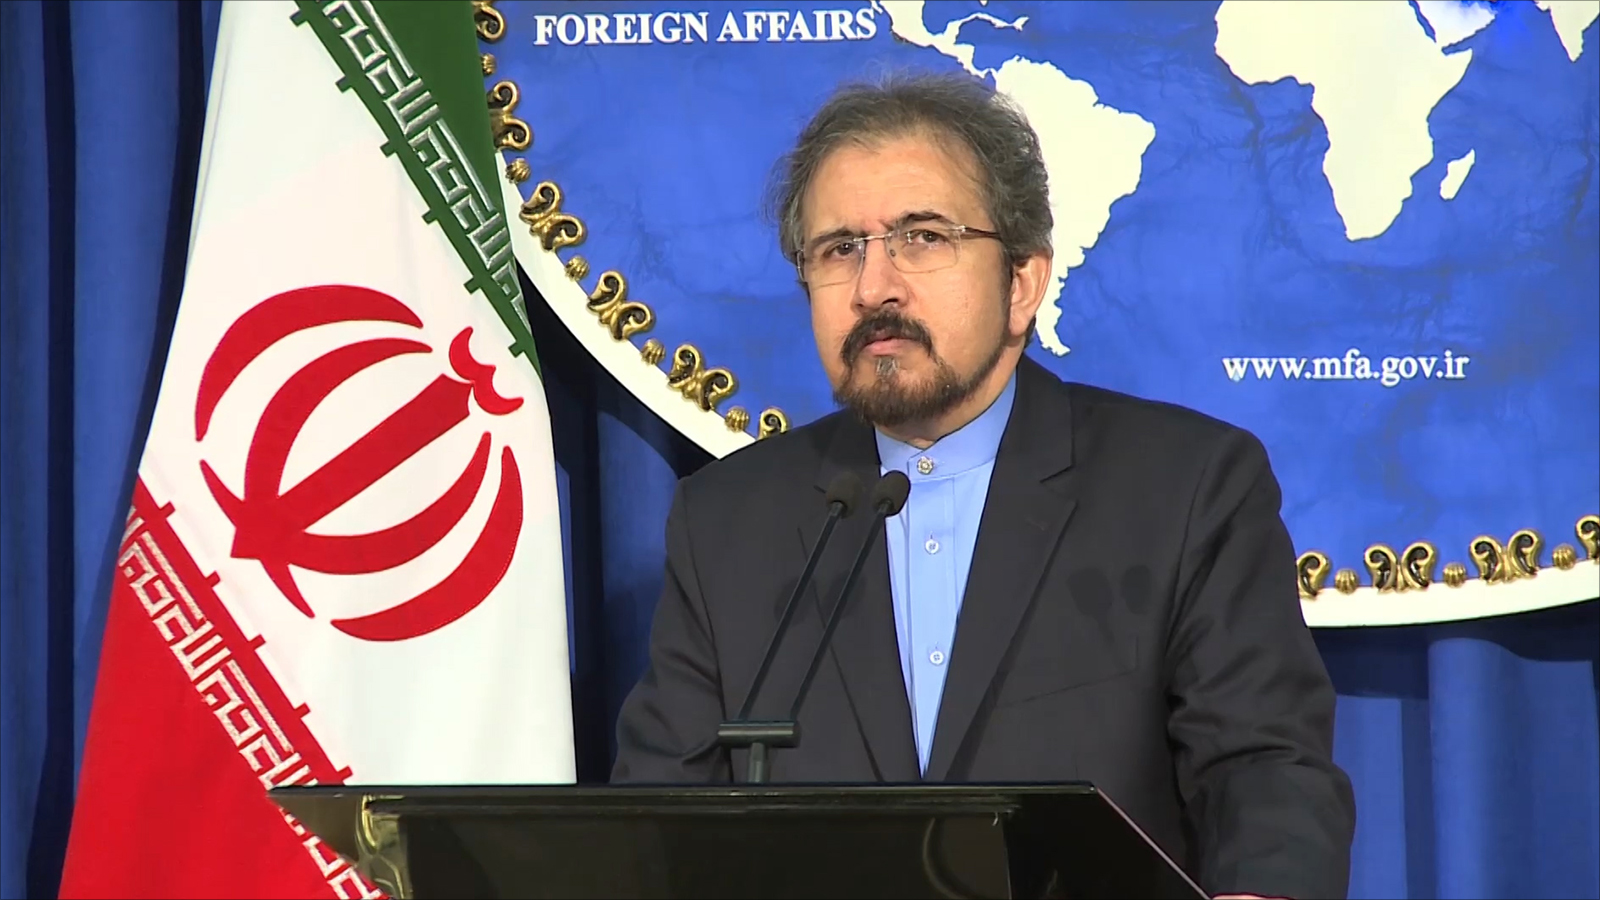  قاسمي: إيران تدين الضربات الأميركية على قاعدة الشعيرات